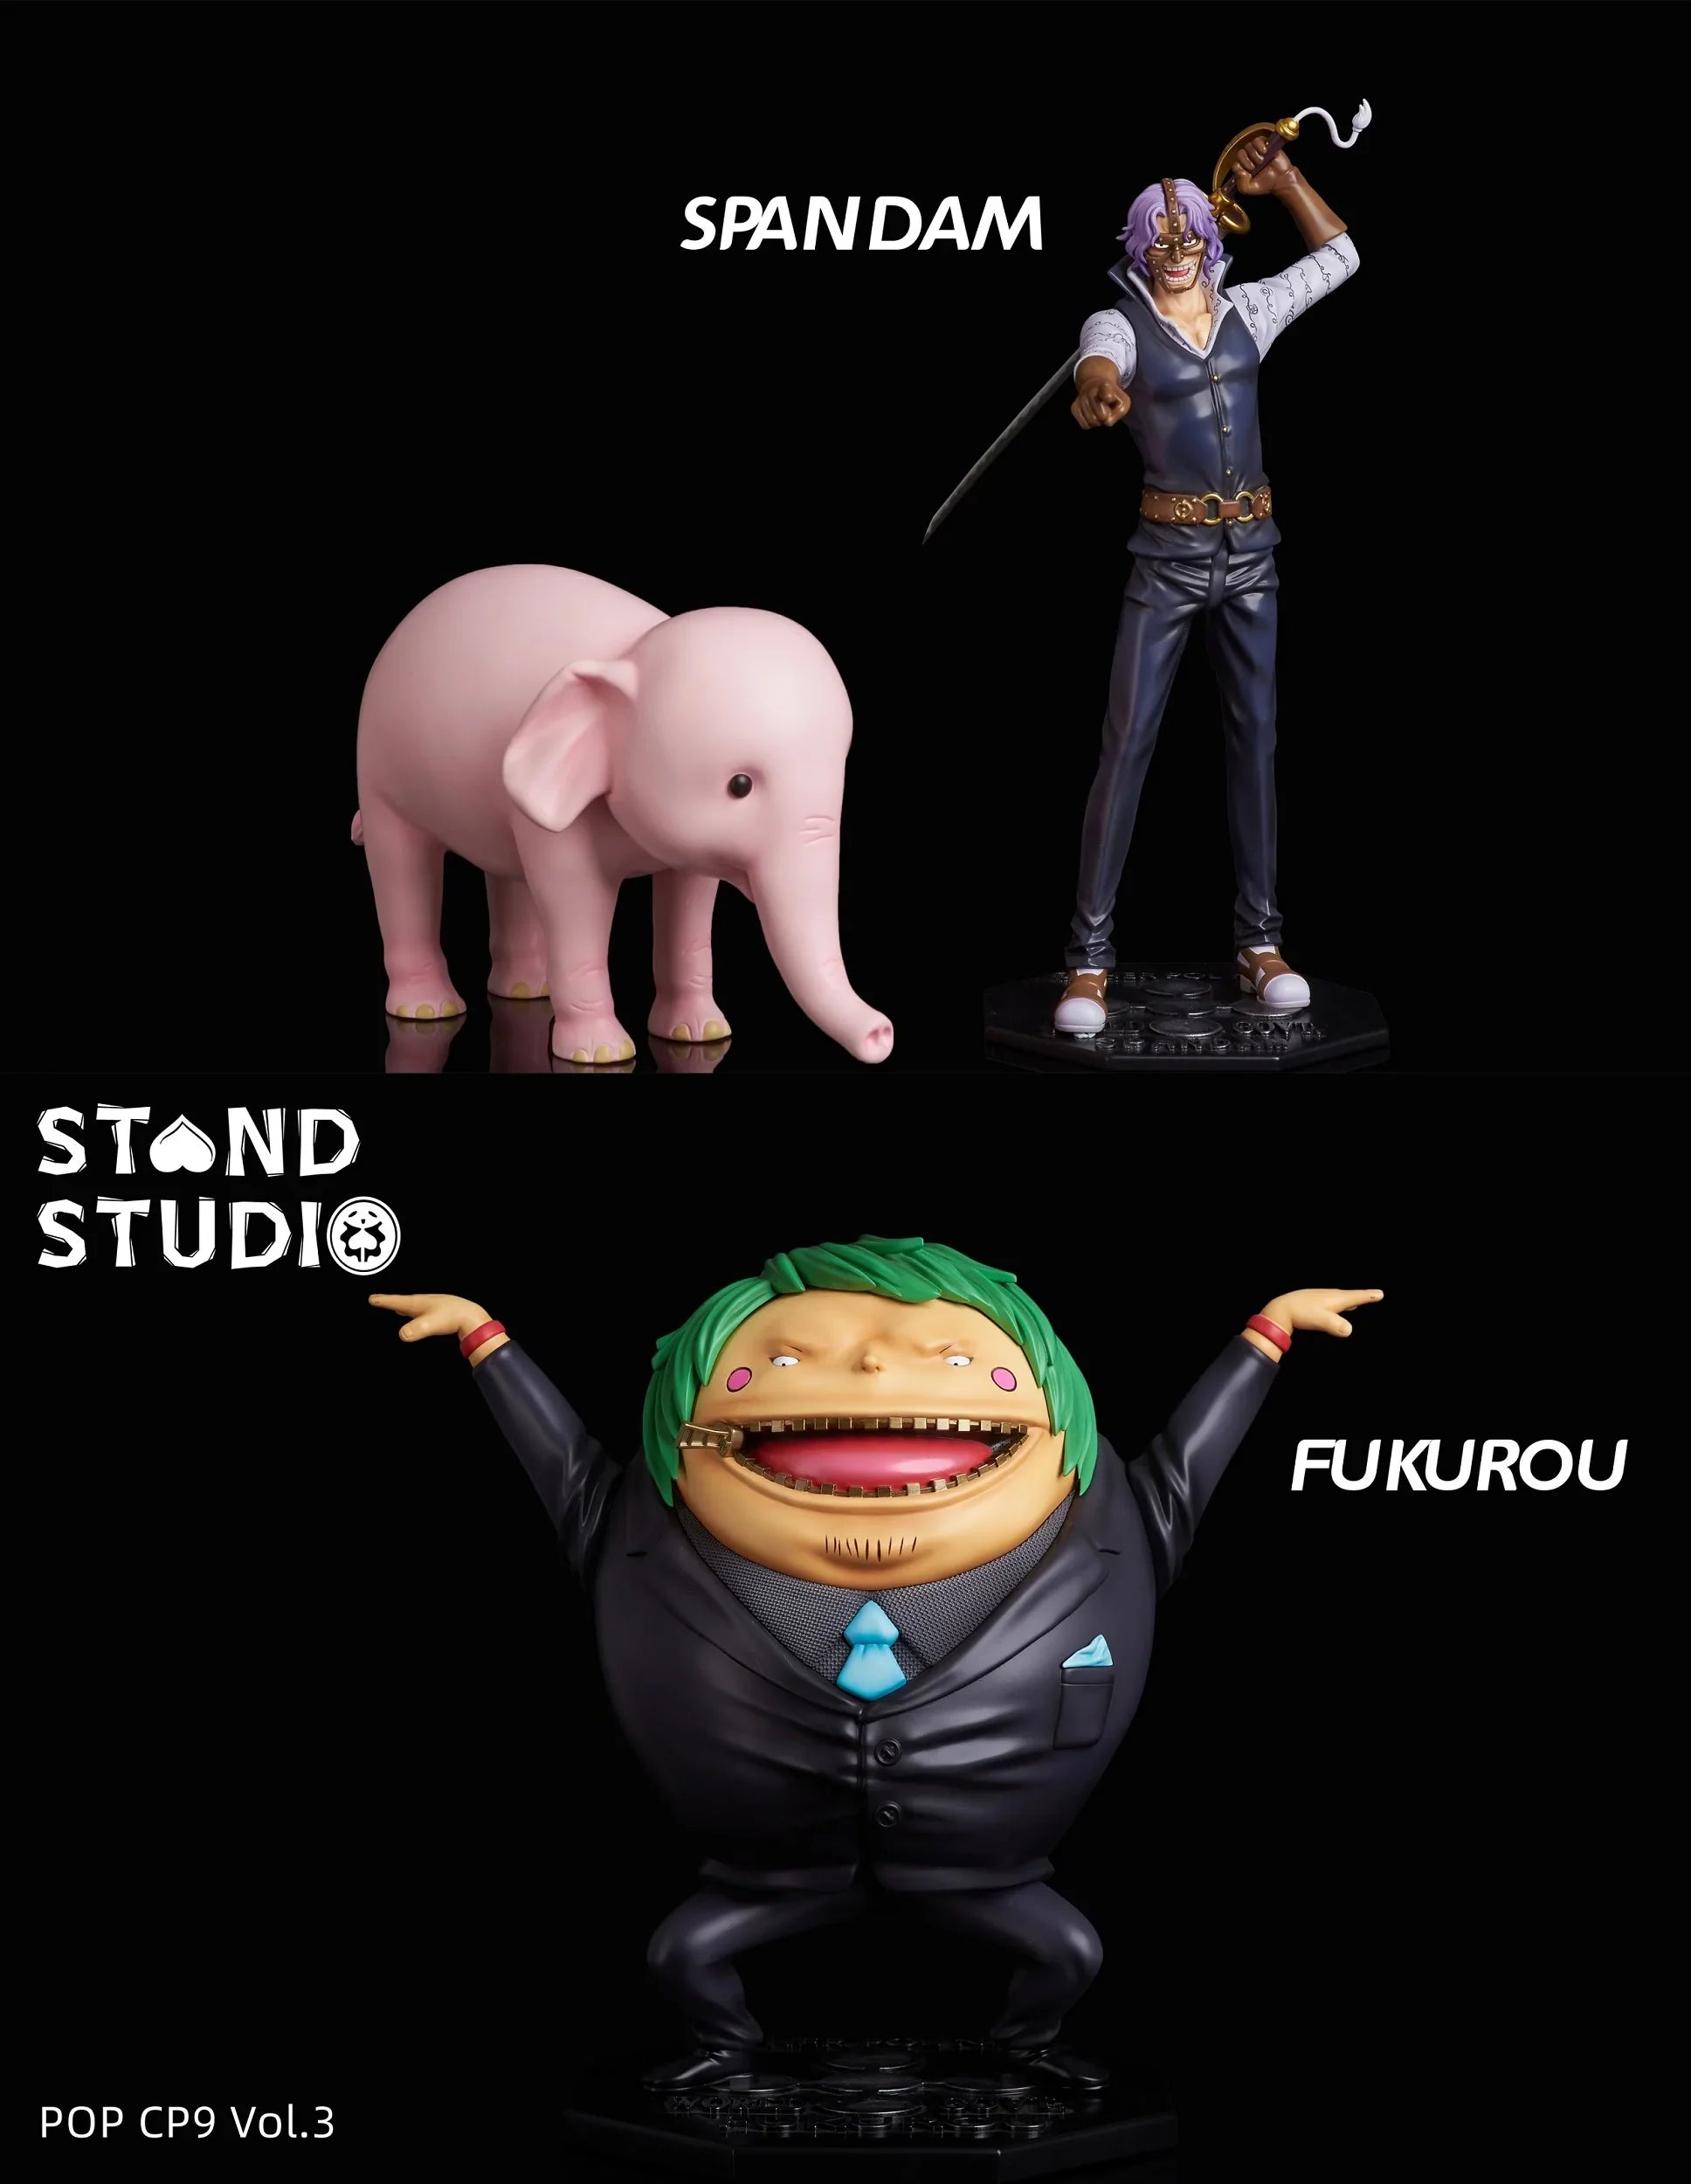 Stand - Spandam and Fukurou StatueCorp